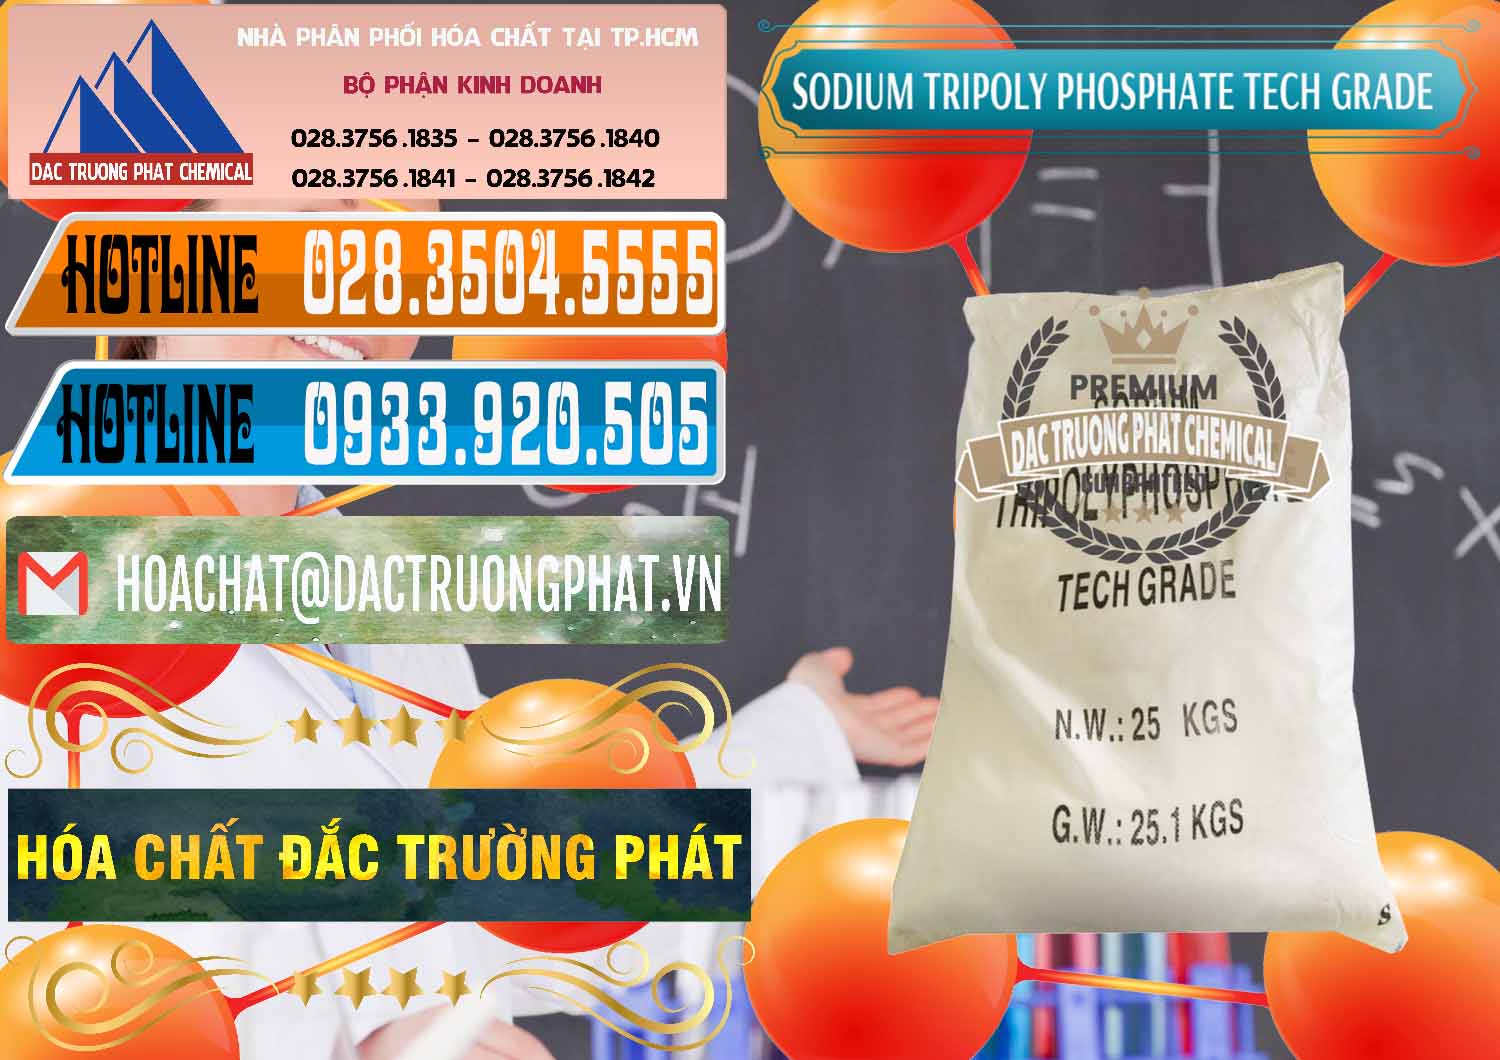 Cty chuyên cung cấp & bán Sodium Tripoly Phosphate - STPP Tech Grade Trung Quốc China - 0453 - Cty kinh doanh ( phân phối ) hóa chất tại TP.HCM - stmp.net